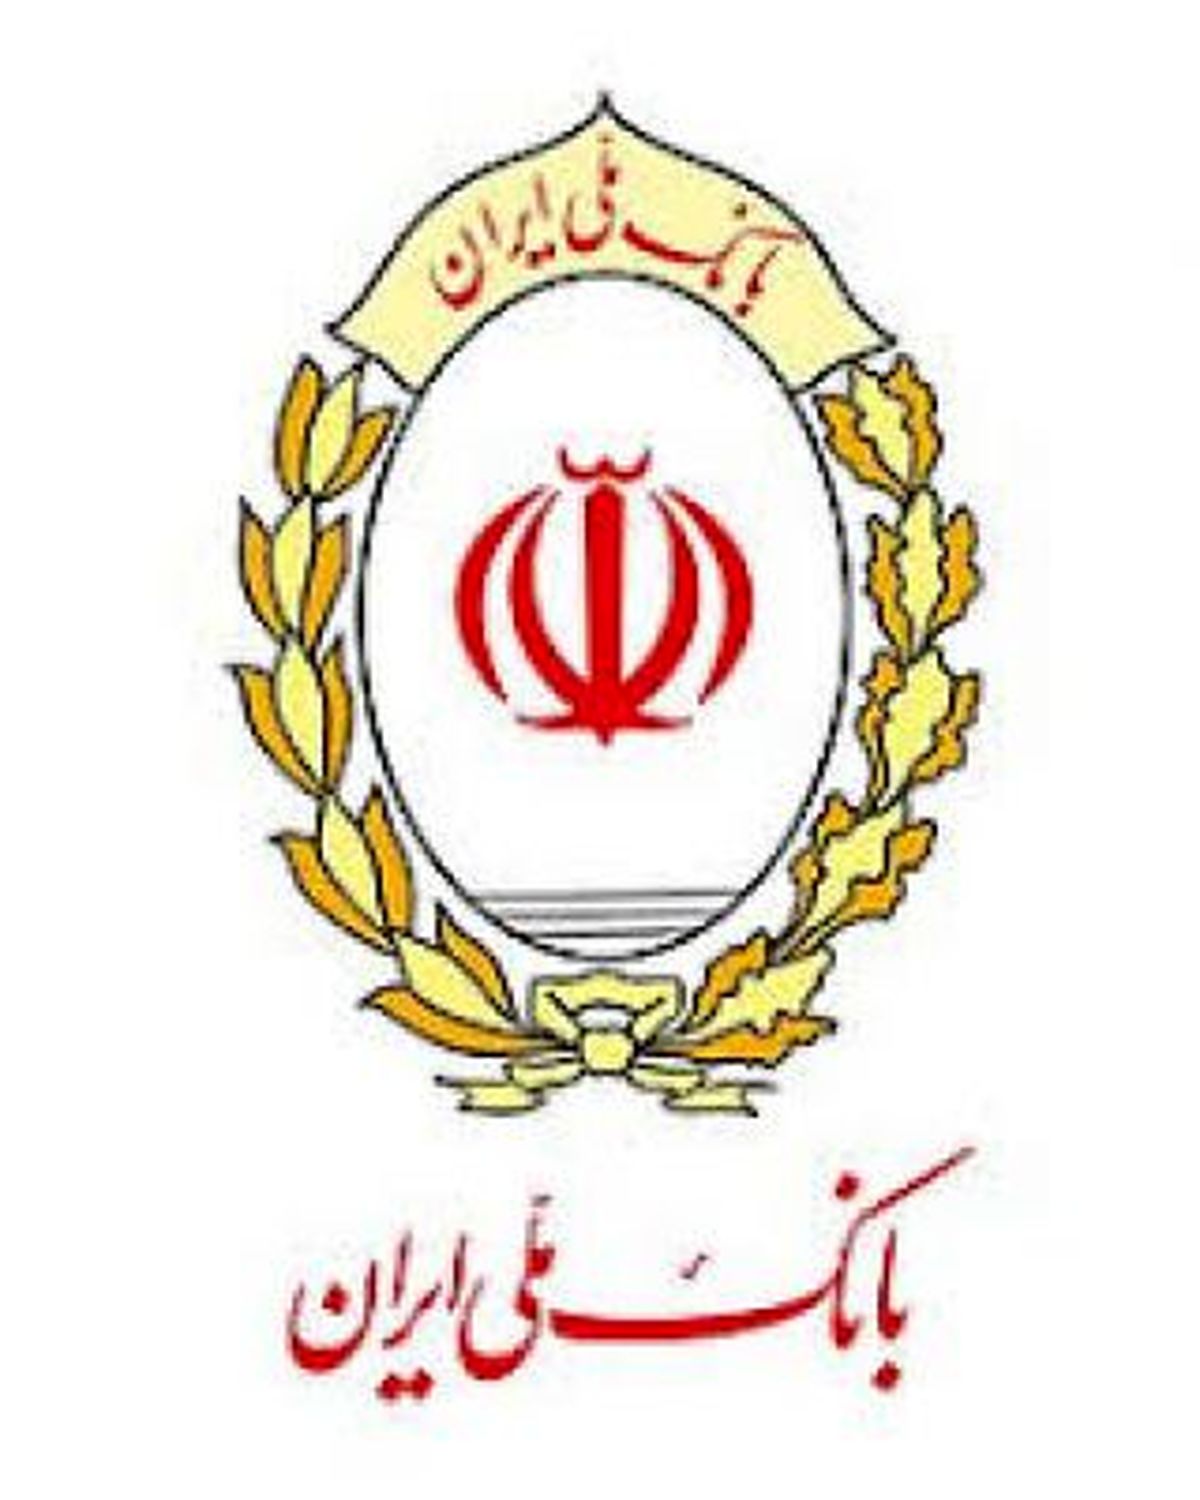 بانک ملی ایران به پویش هلال احمر برای کمک به سیل زدگان پیوست